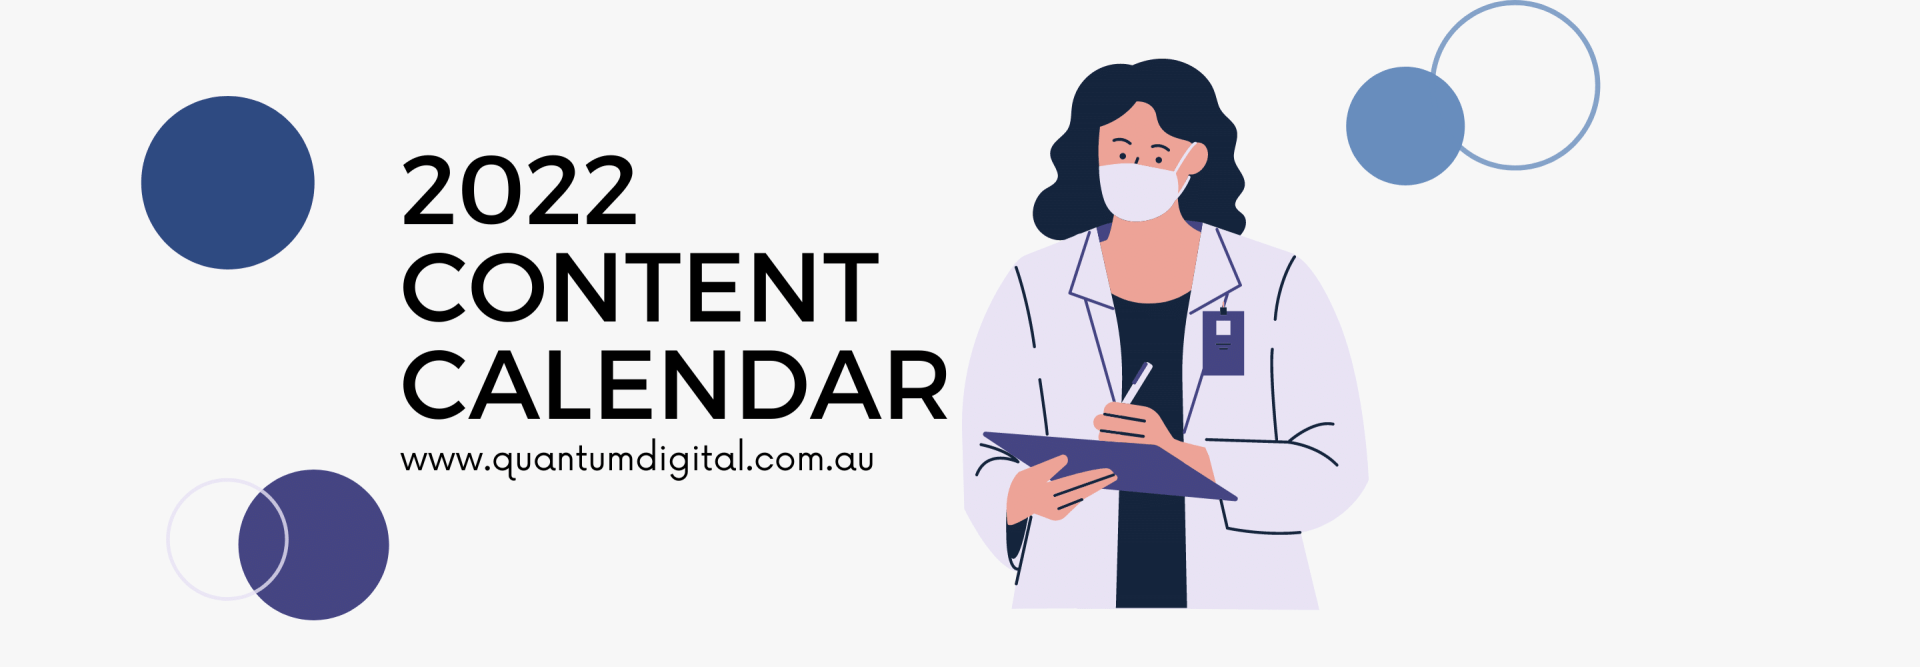 Medical Social Content Calendar 2022